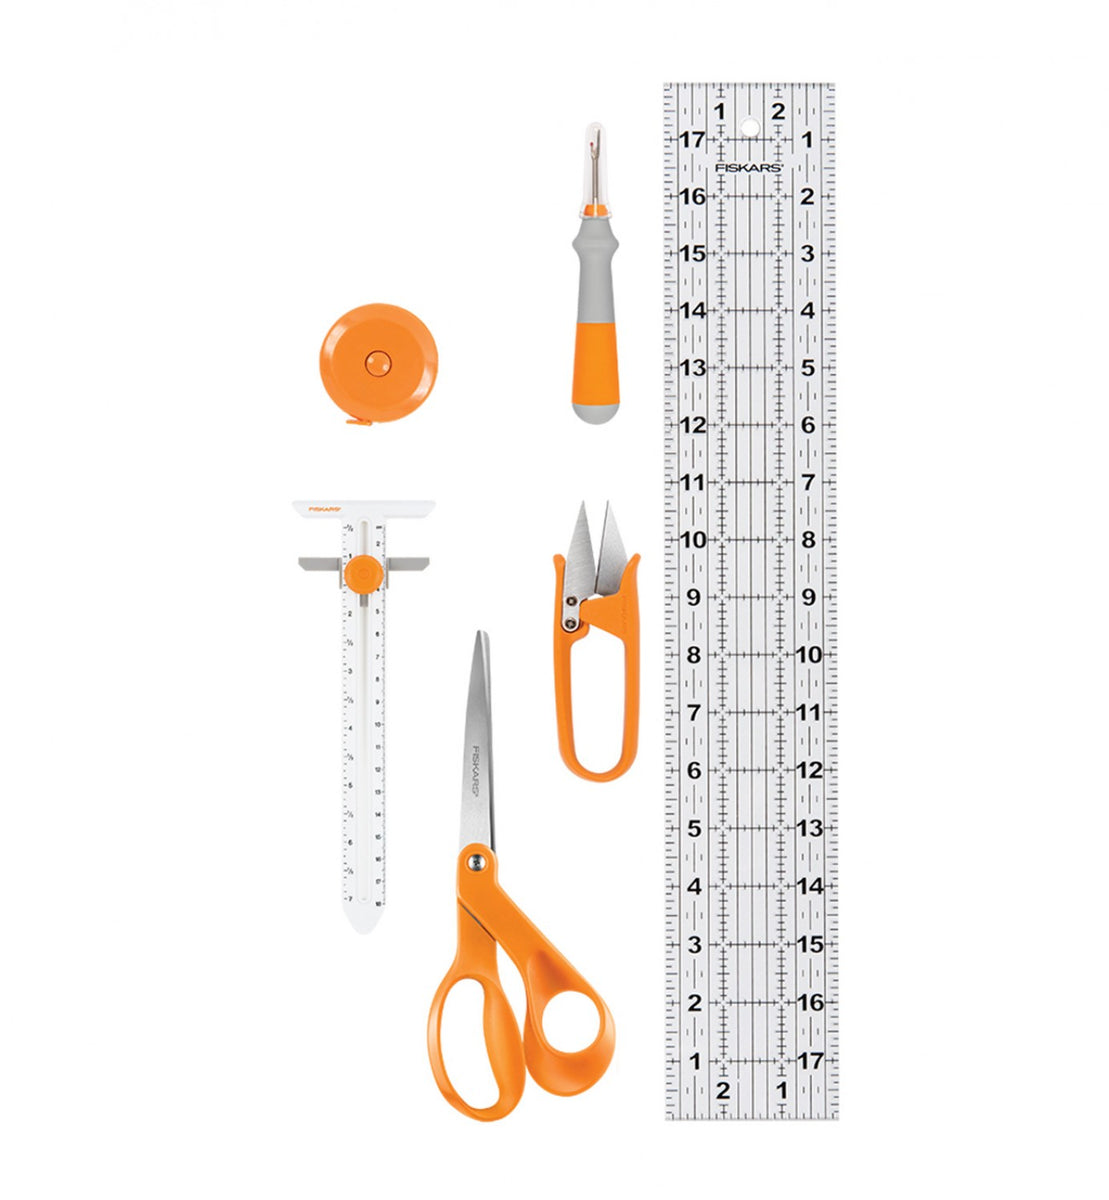 Fiskars® for Kids 5 Pointed Tip Scissors - Set of 12